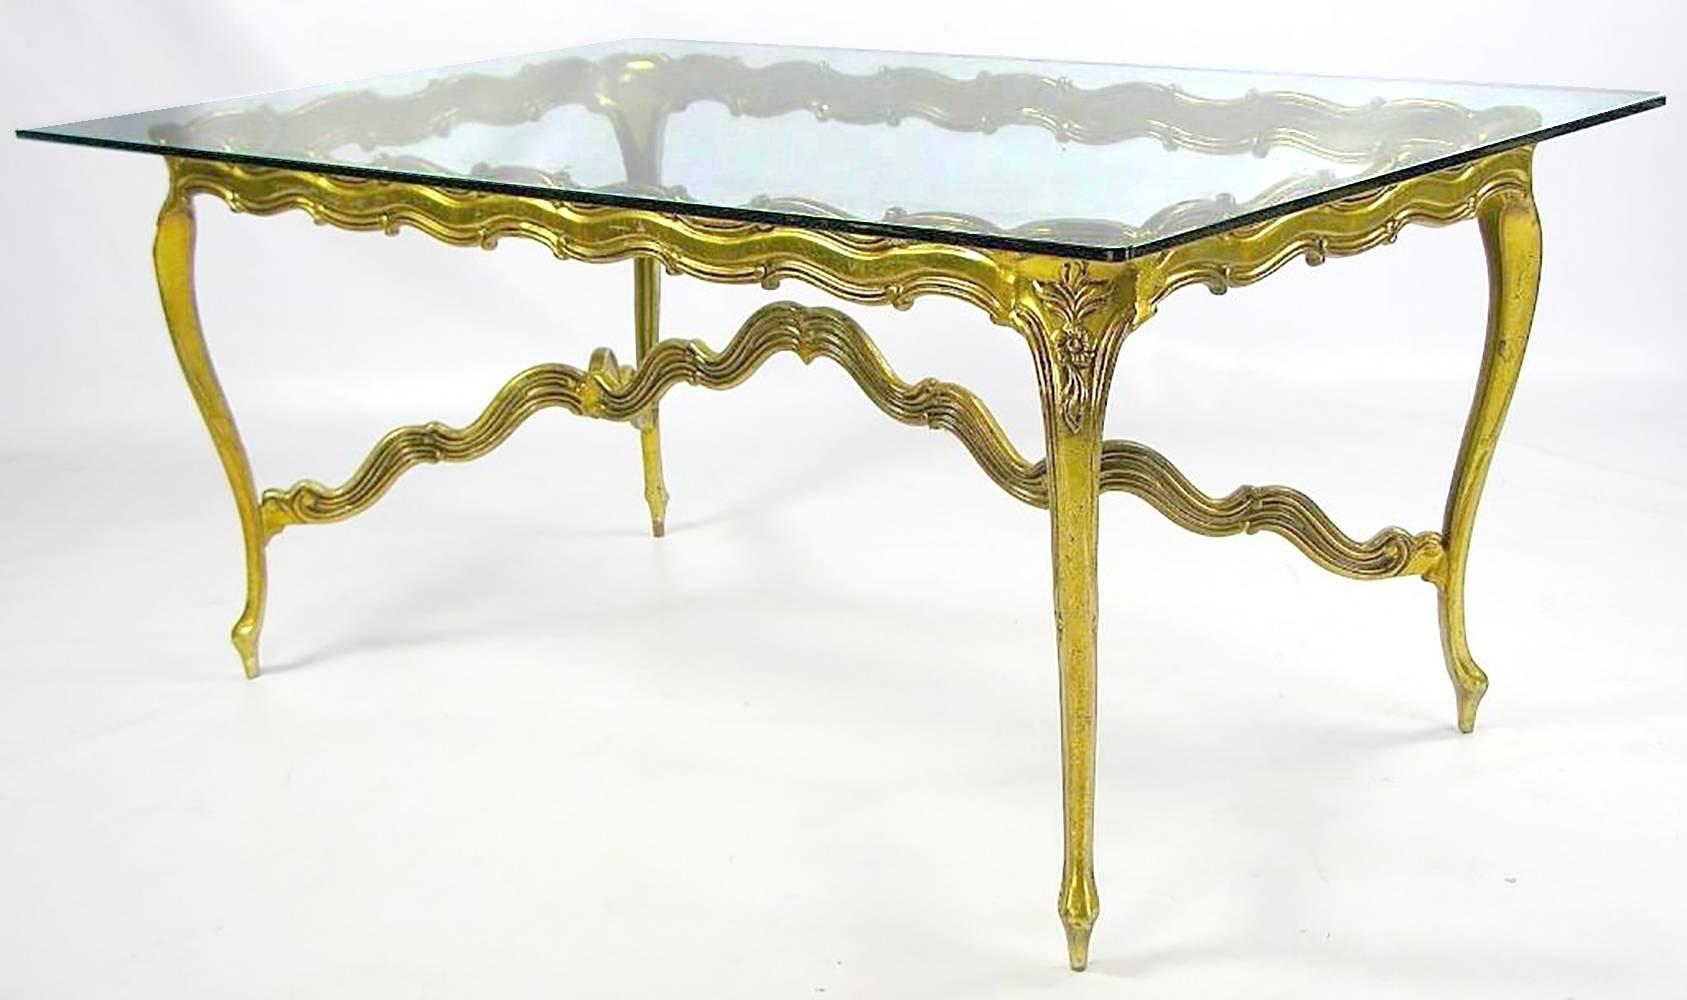 Dans un design Louis XV stylisé, cette table est une interprétation du milieu du siècle d'une forme traditionnelle. Le cadre en aluminium doré, moulé et patiné, est solide pour son profil svelte, de sorte qu'il est visuellement plus léger que ses